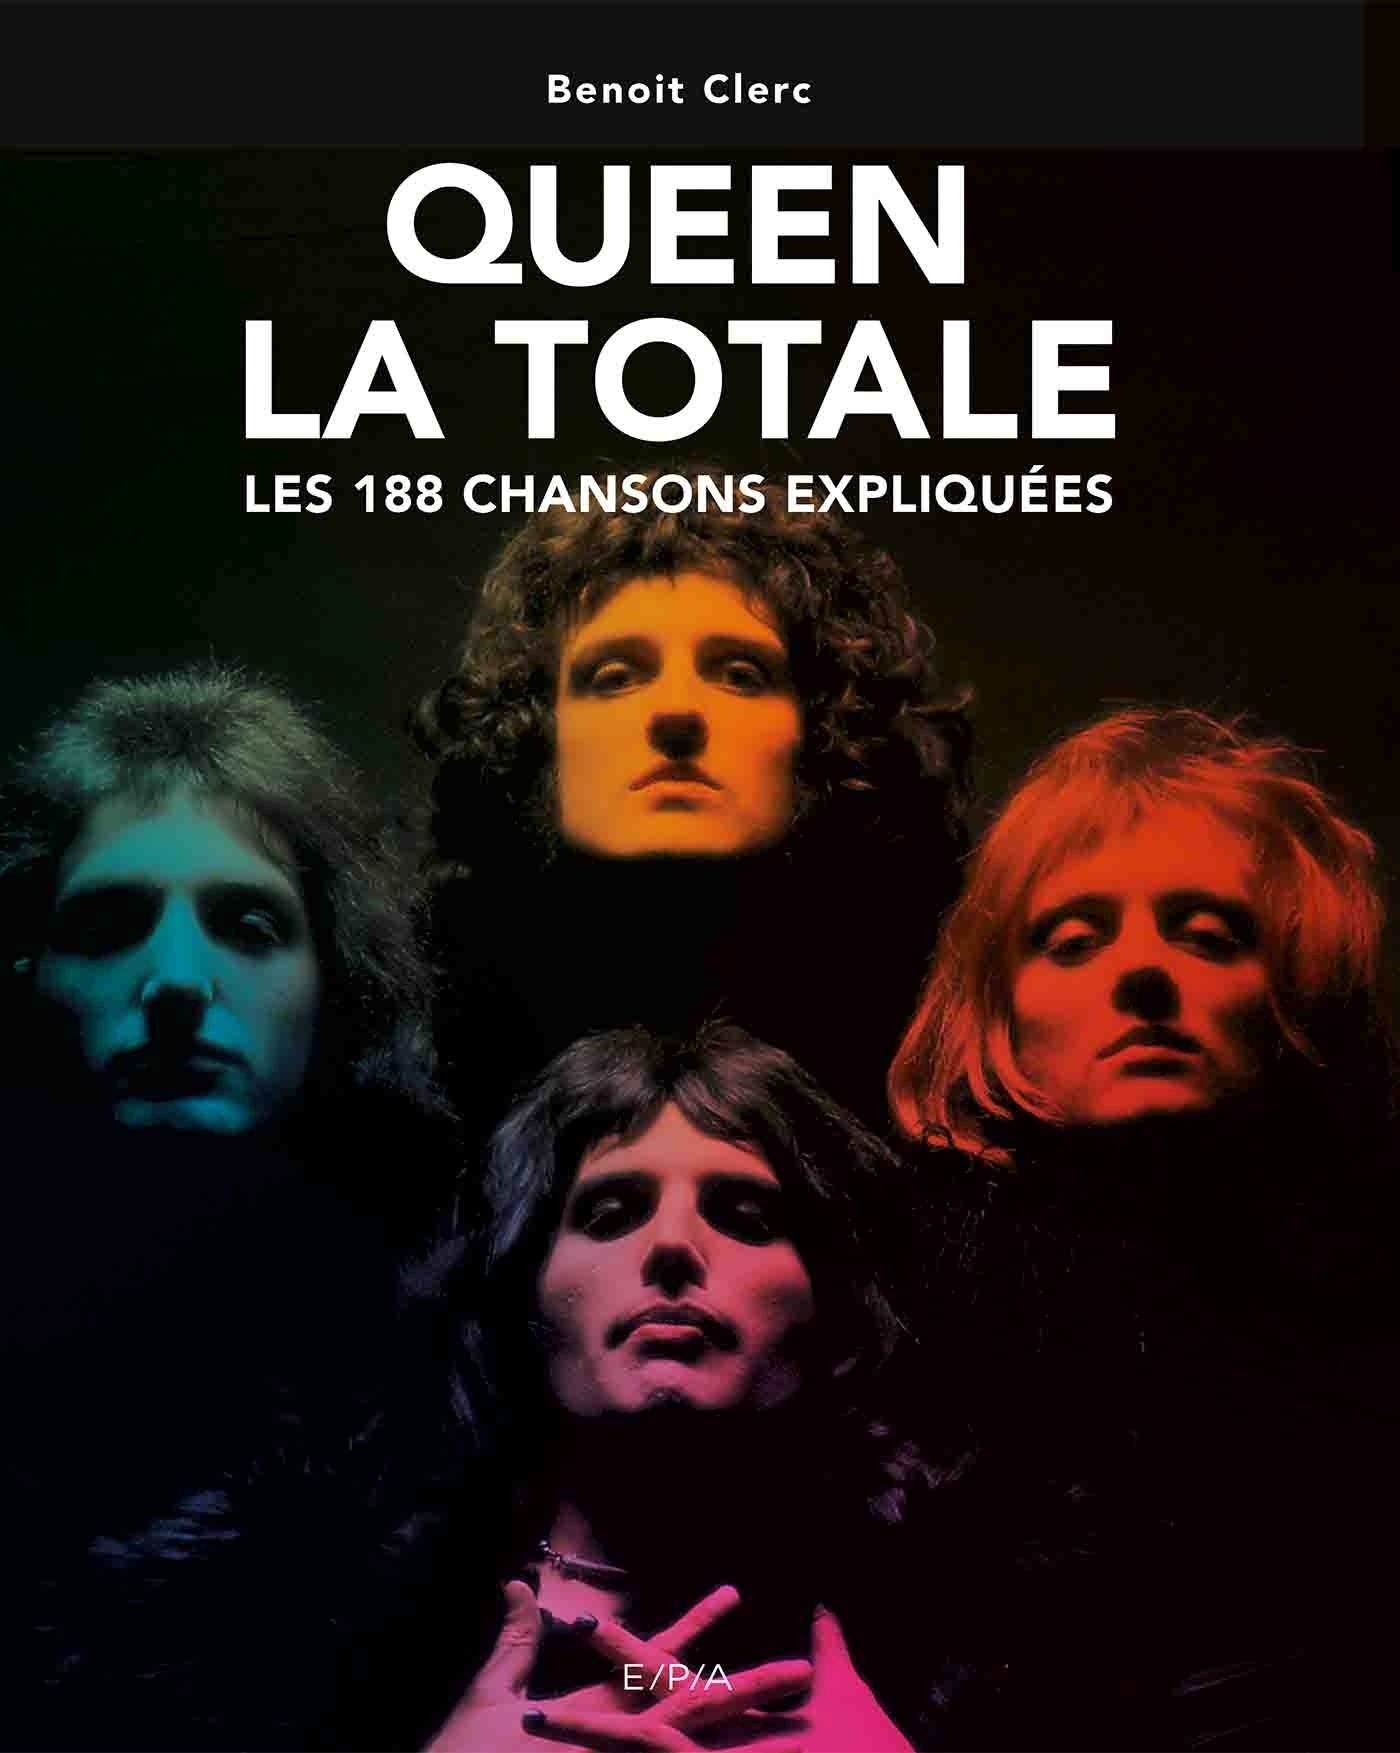 Queen - La Totale - Les 188 chansons expliquées - Benoît Clerc (EAN13 :  9782376712640)